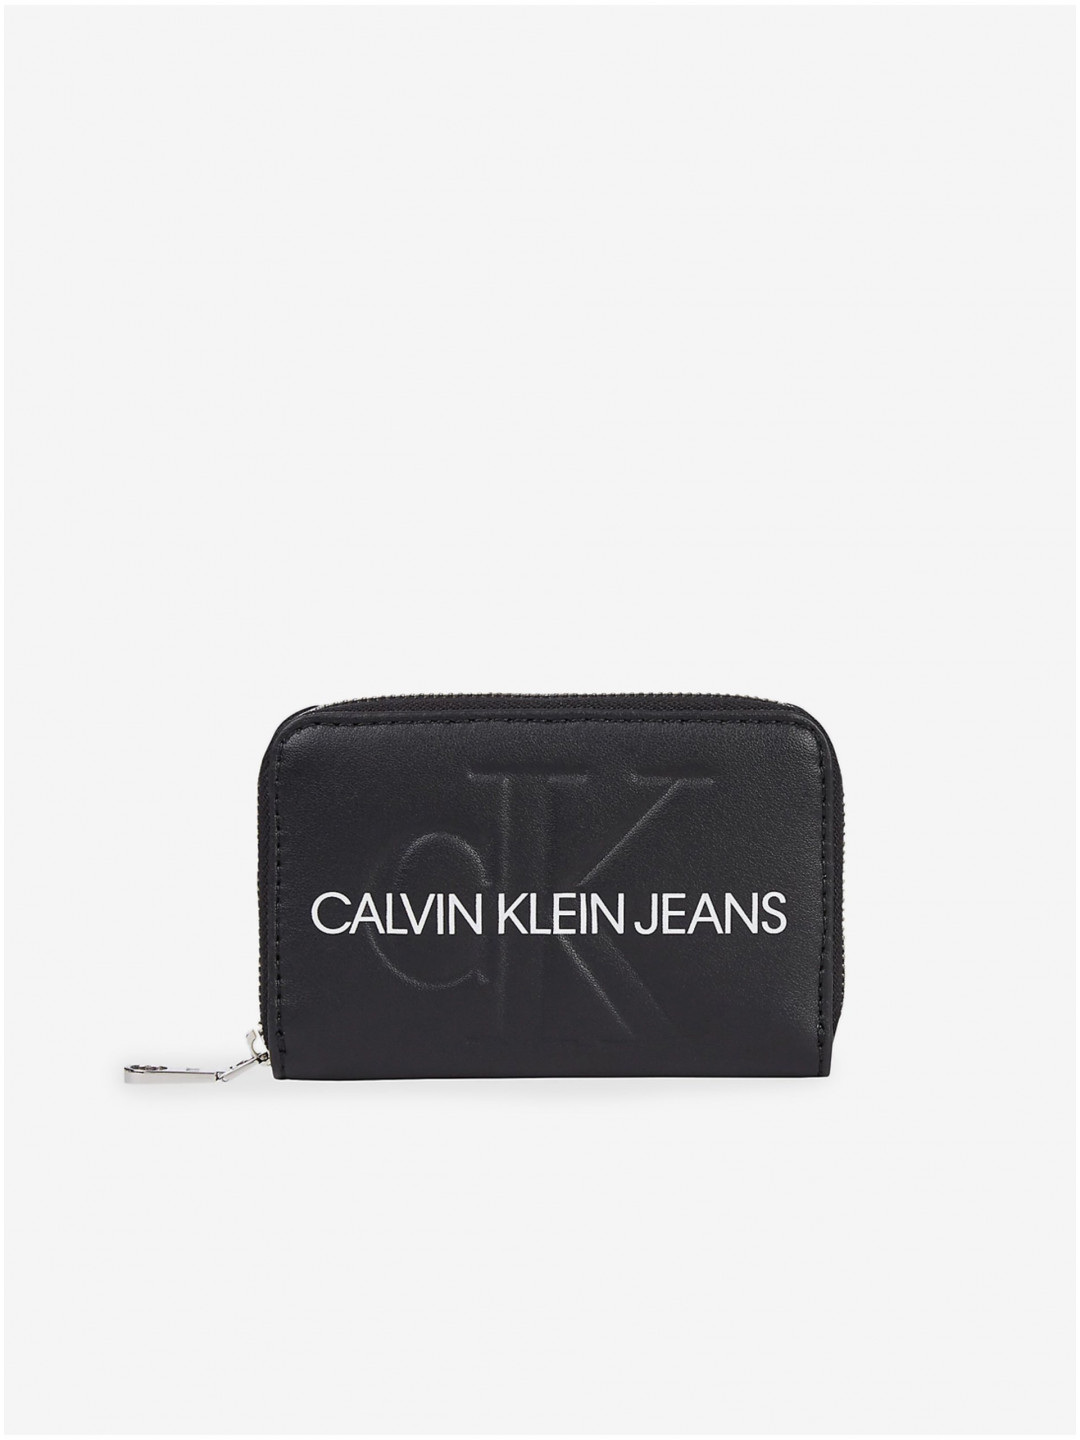 Černá dámská malá peněženka Calvin Klein Jeans